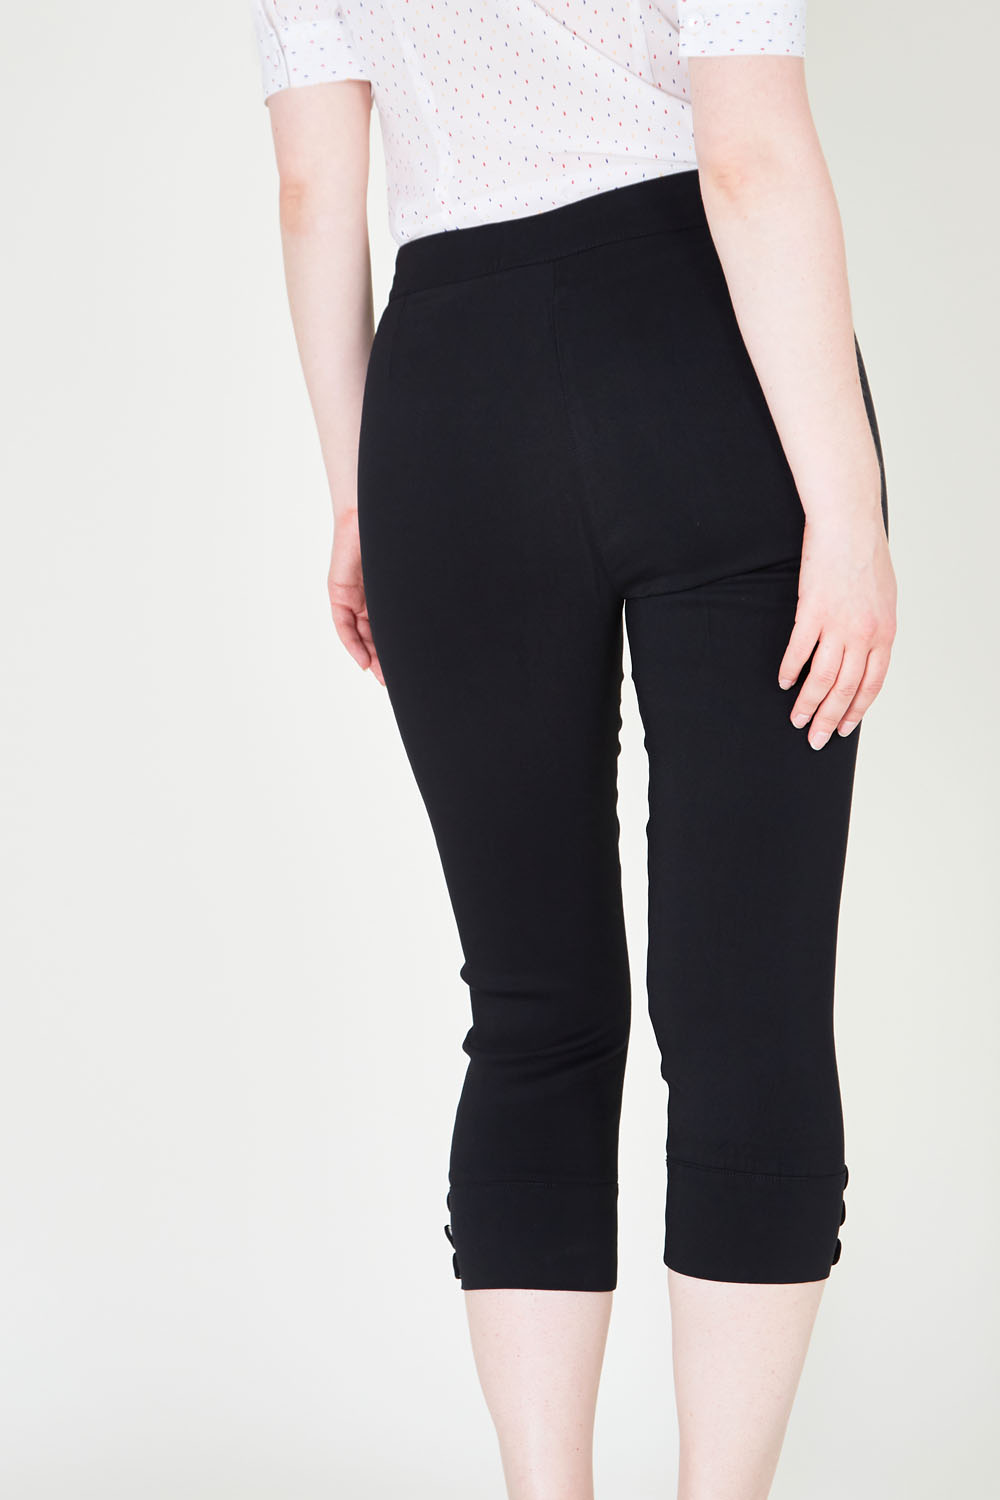 Easy 2 Wear ® Women's Regular Fit Capri Black : Amazon.in: Fashion